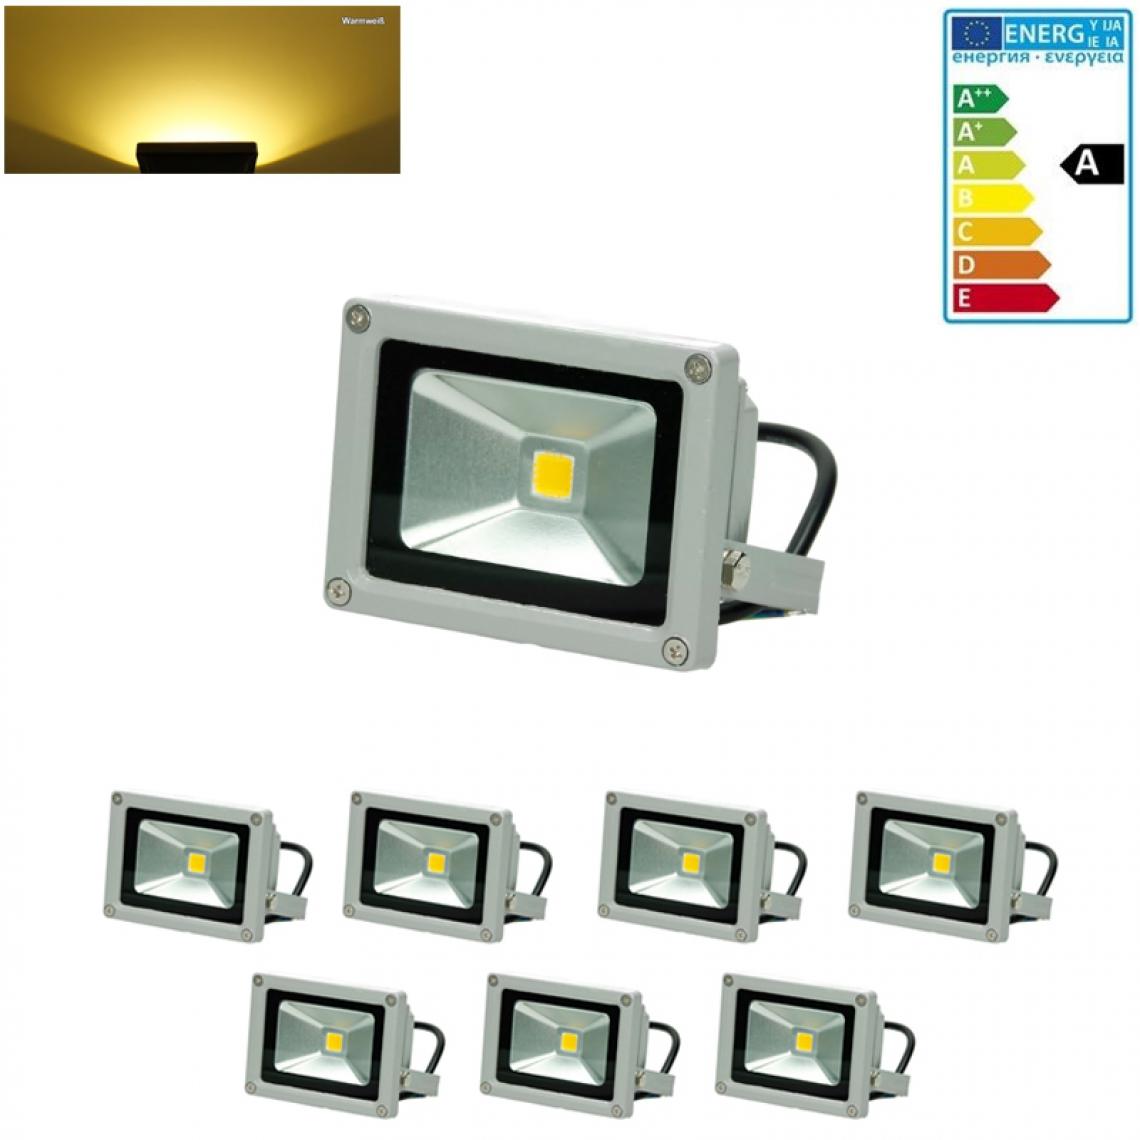 Ecd Germany - ECD Germany 7 x Projecteur LED 10W | 600 lumens | 2800K blanc chaud | Classe de protection IP65 | Projecteur mural pour extérieur - Projecteurs LED